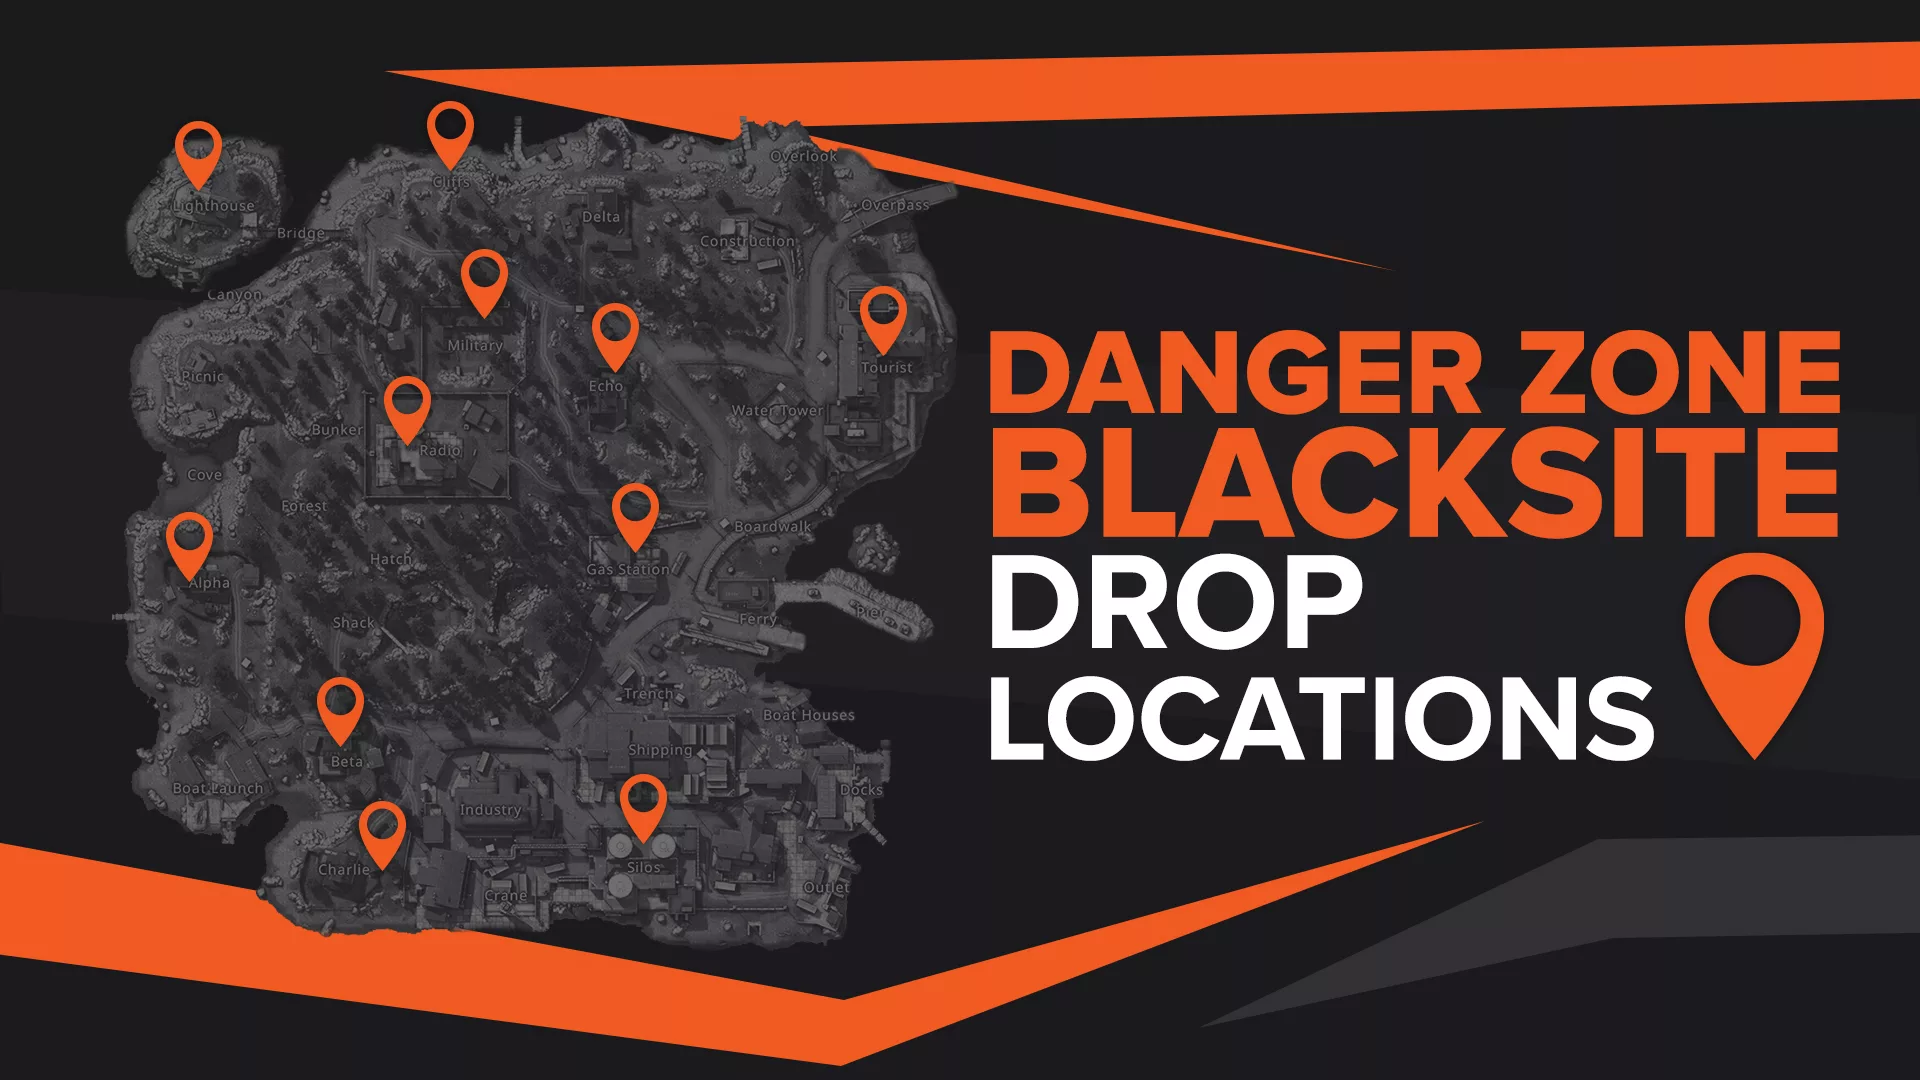 Best CS:GO Blacksite Drop Locations in Danger Zone